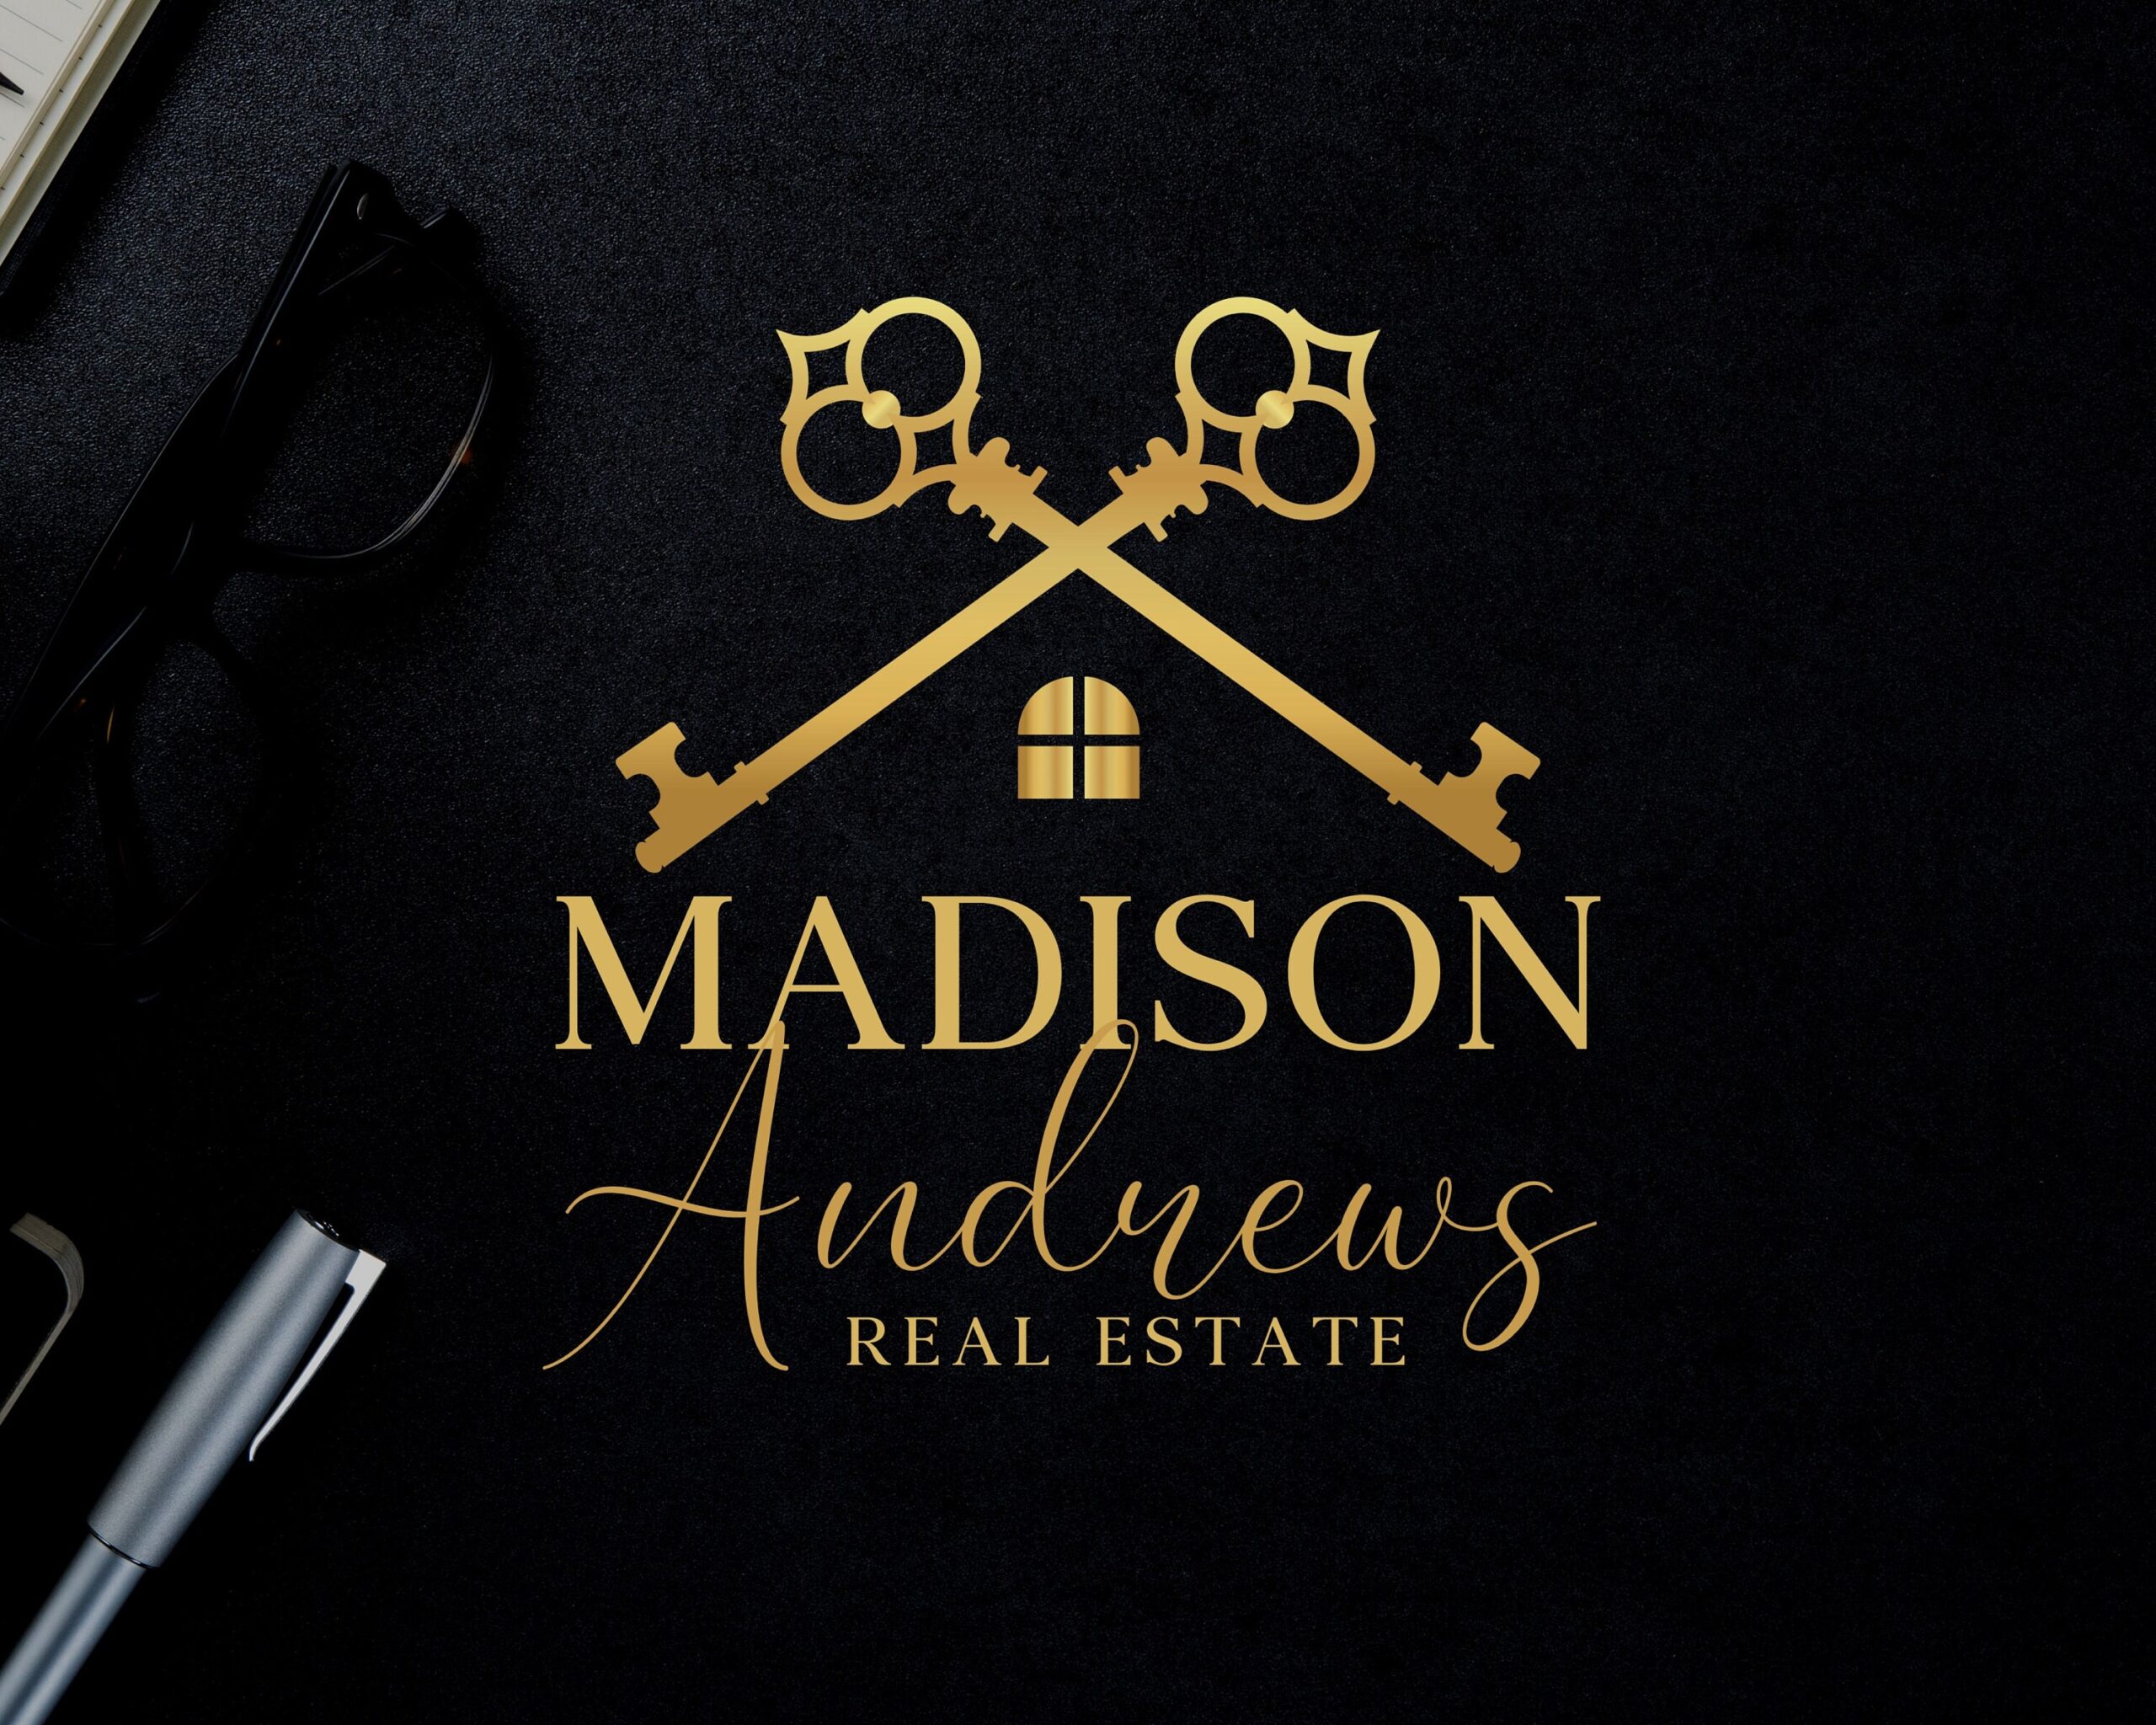 Premade Real Estate Golden Keys Logo - Transparent PNG, PDF, SVG, Web and Print - High-Quality Original Branding for Real Estate Agents